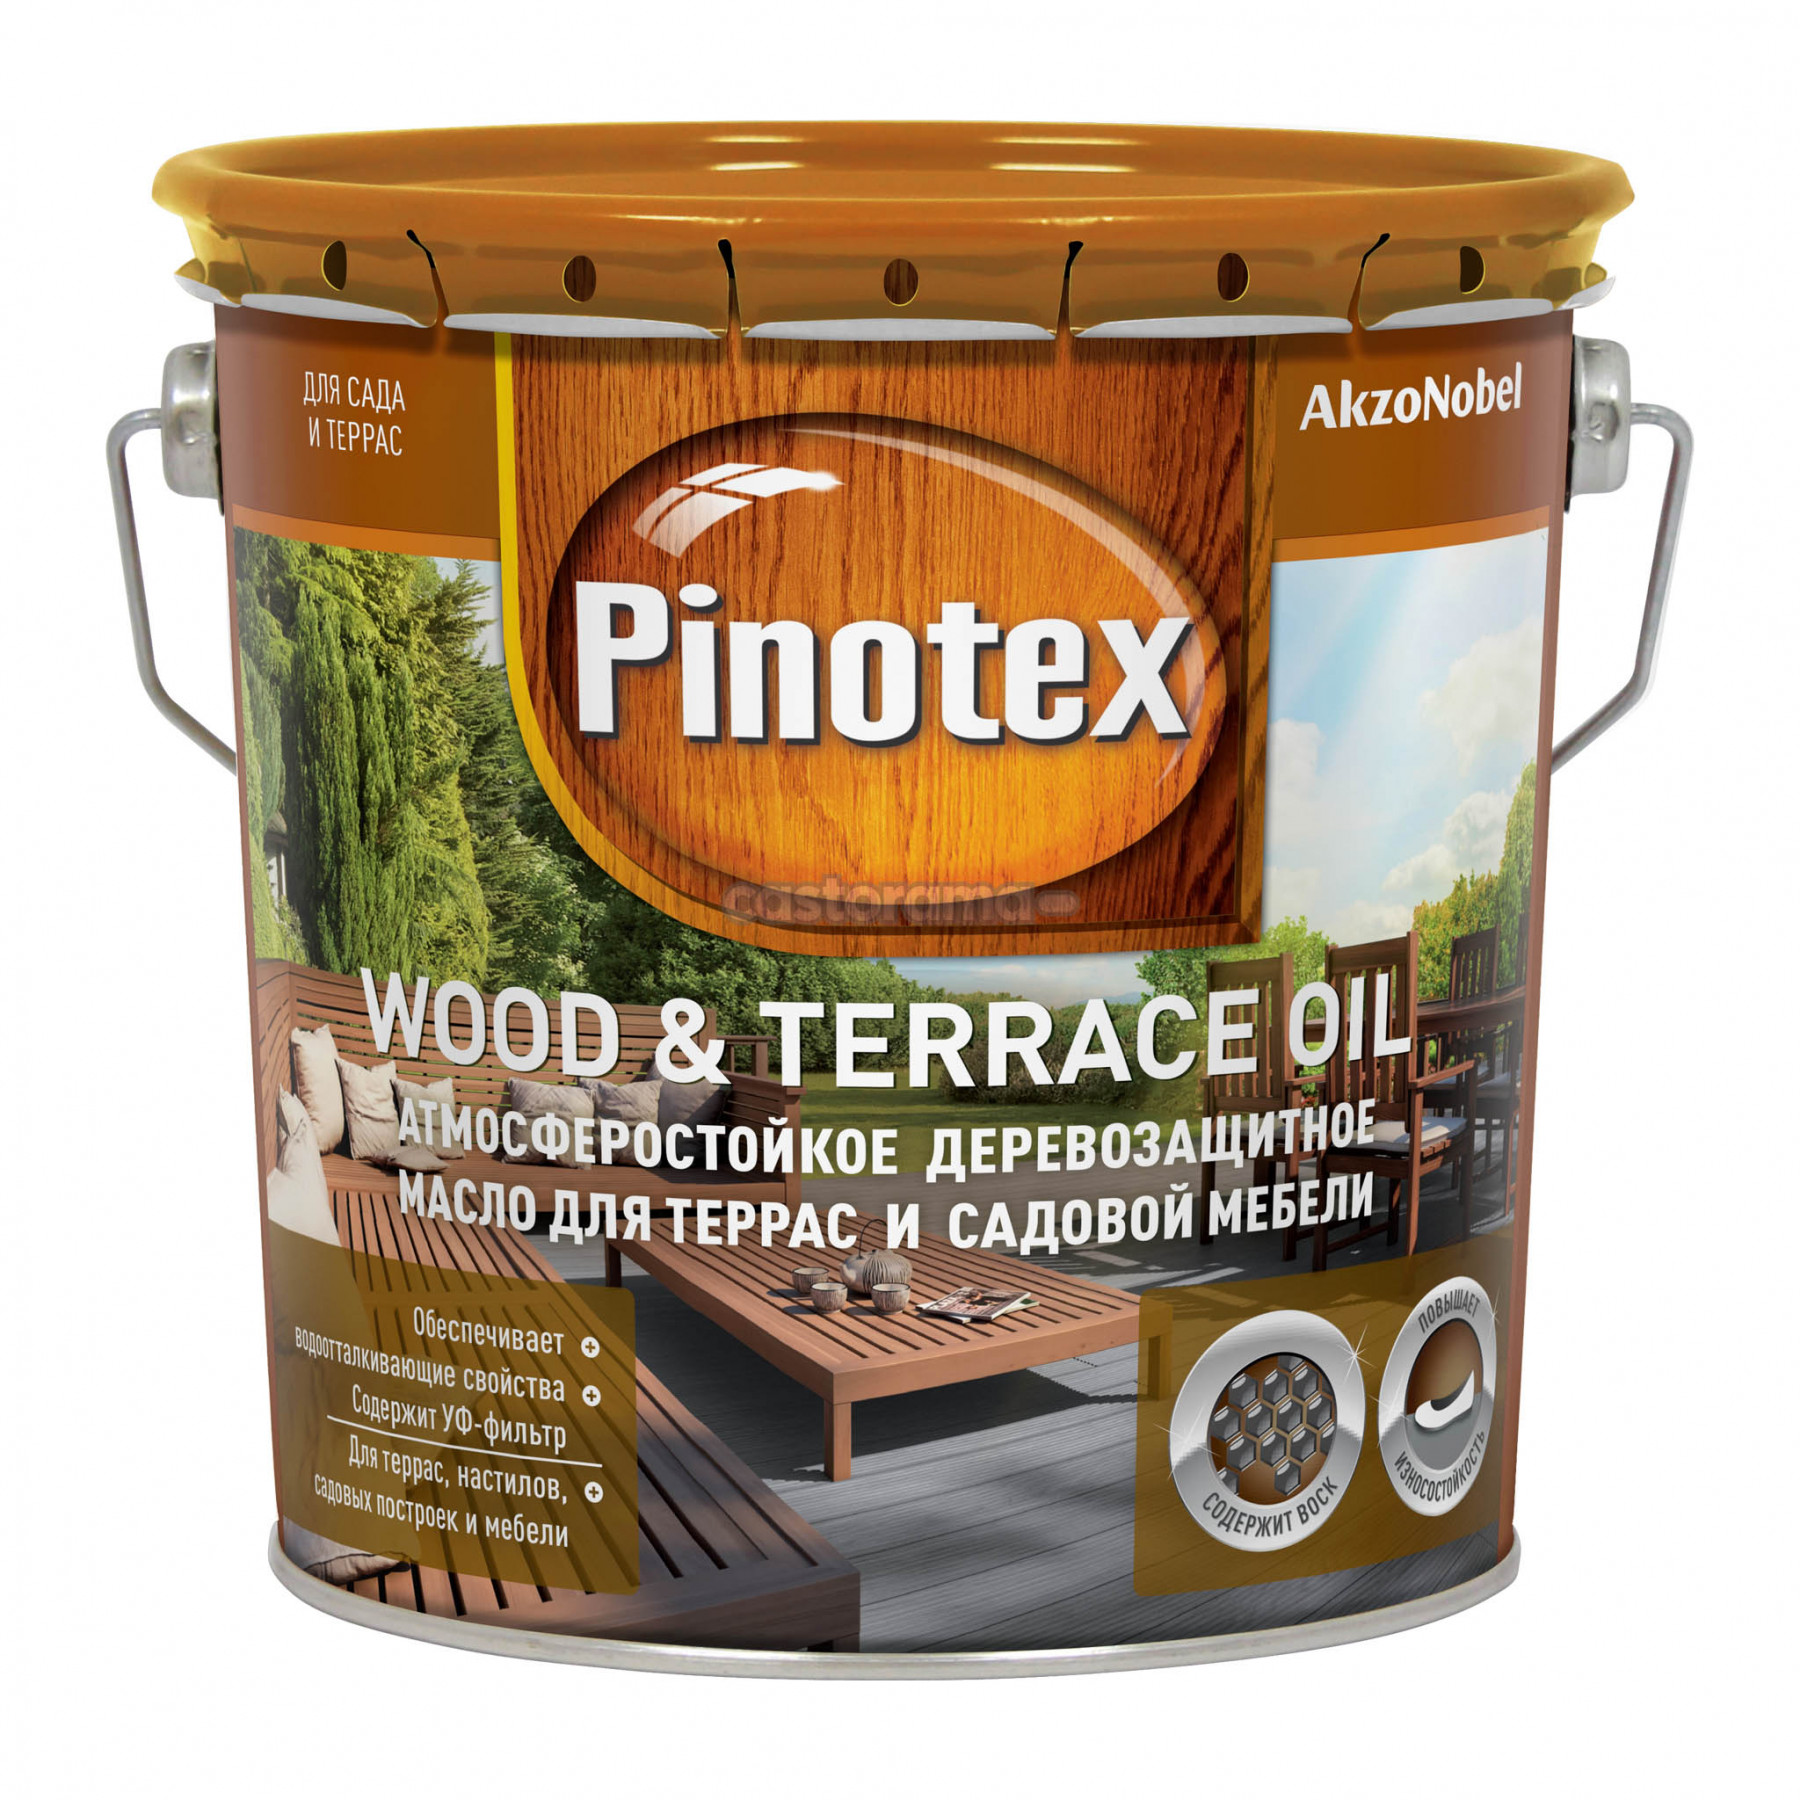 картинка Pinotex Wood Oil&Terrace Oil